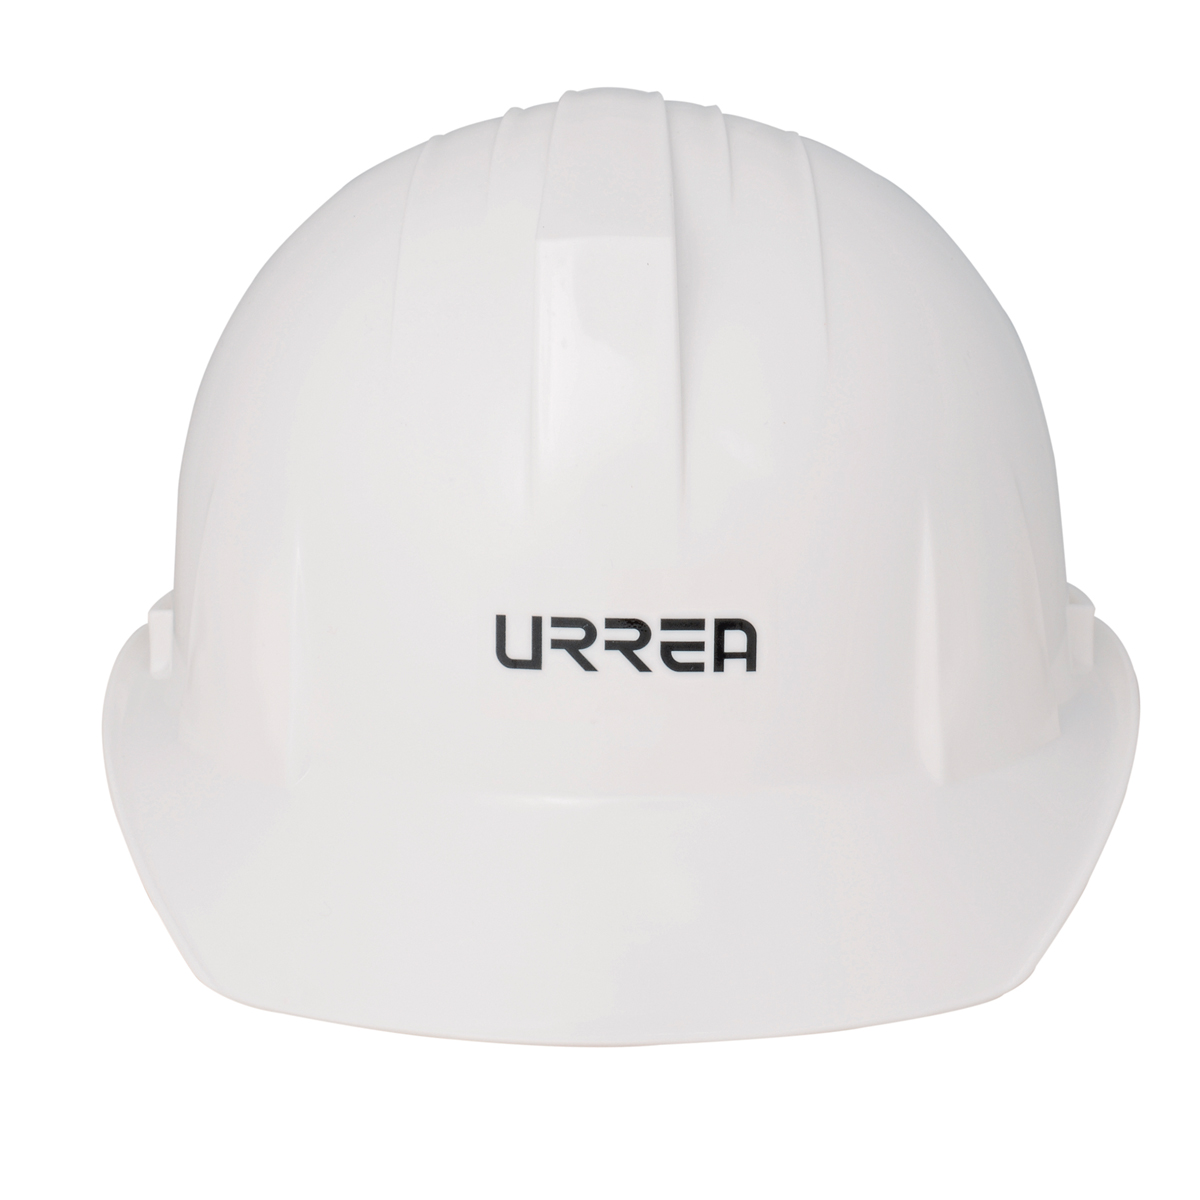 Imagen para Casco de seguridad con ajustede intervalos color blanco de Grupo Urrea